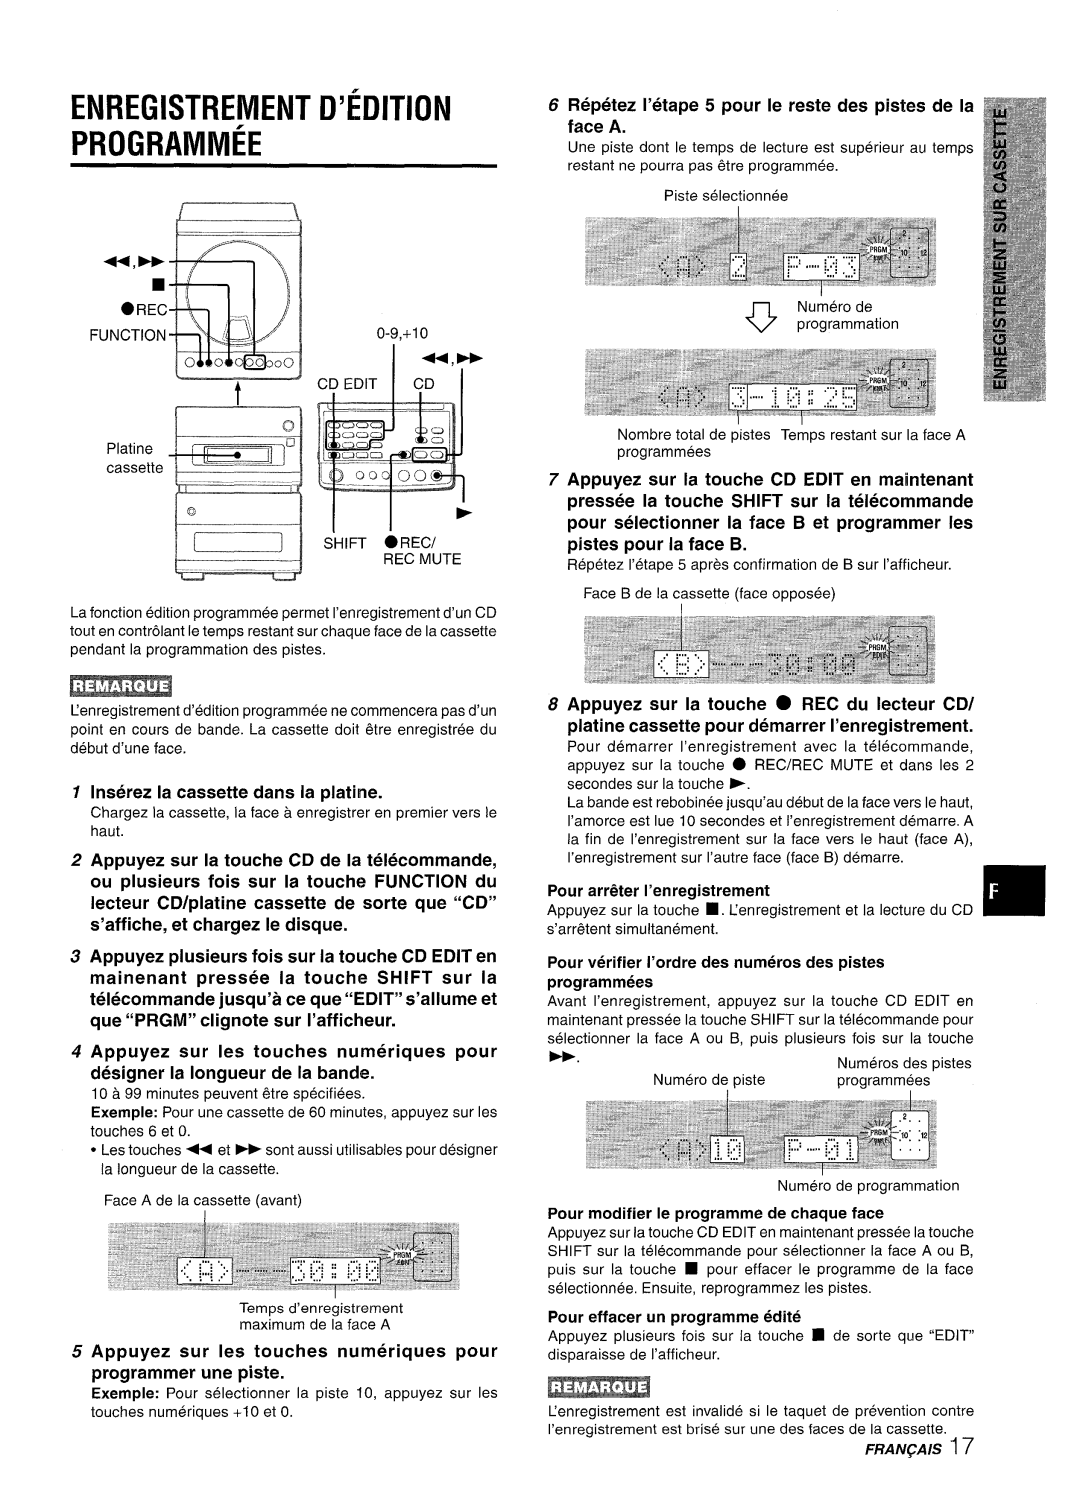 Aiwa XR-M88 manual ENREGISTREMENT D’fDITION PROGRAMMED, Appuyez plusieurs fois sur la touche CD EDIT en 